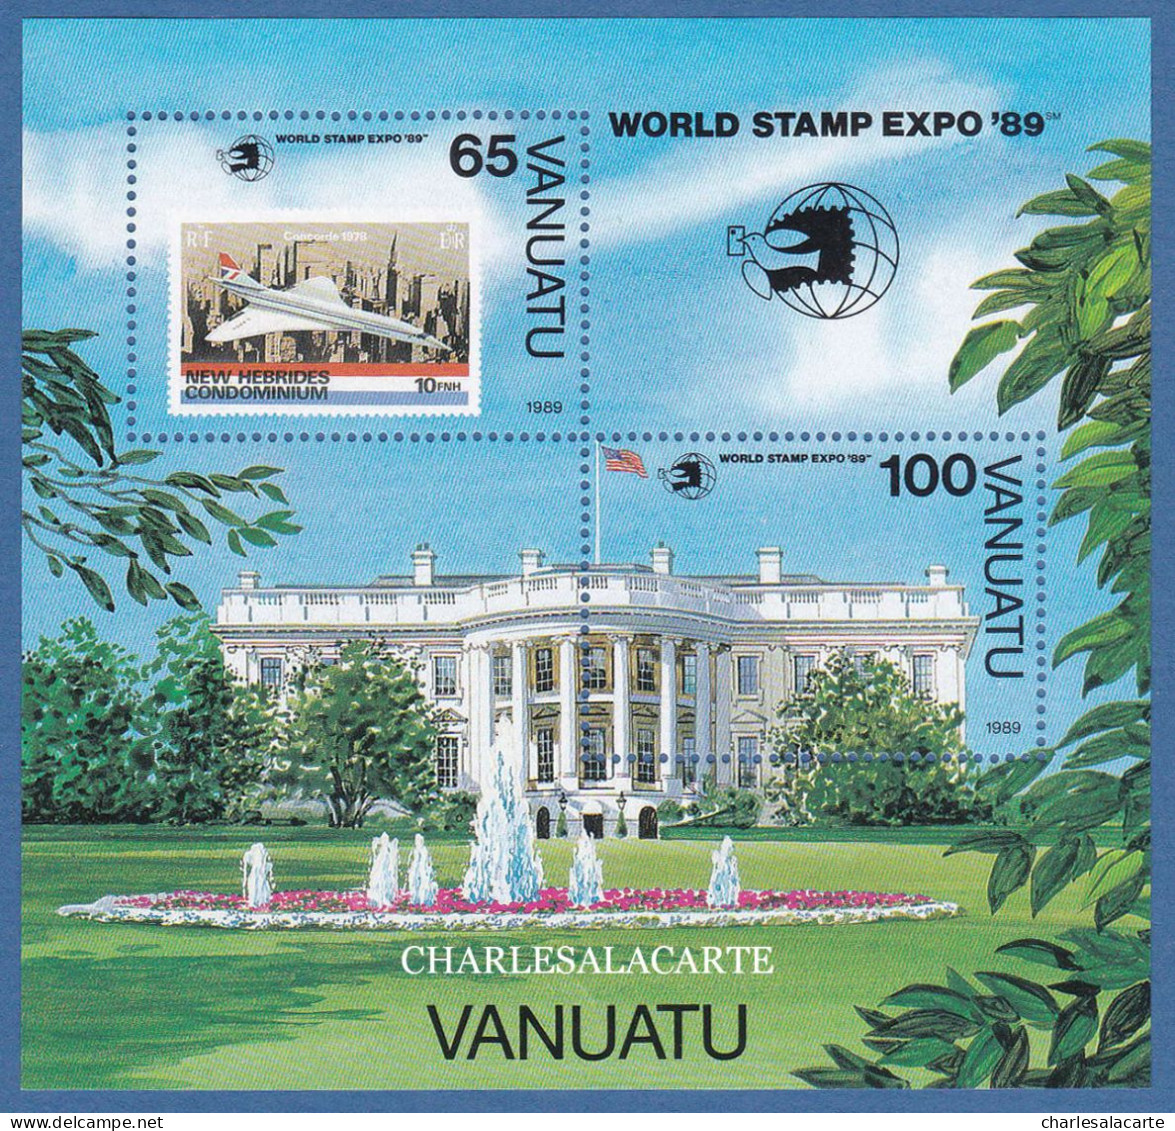 VANUATU  1989  WORLD STAMP EXPO M.S. CONCORDE & WHITE HOUSE  S.G. MS 537  U.M. - Vanuatu (1980-...)